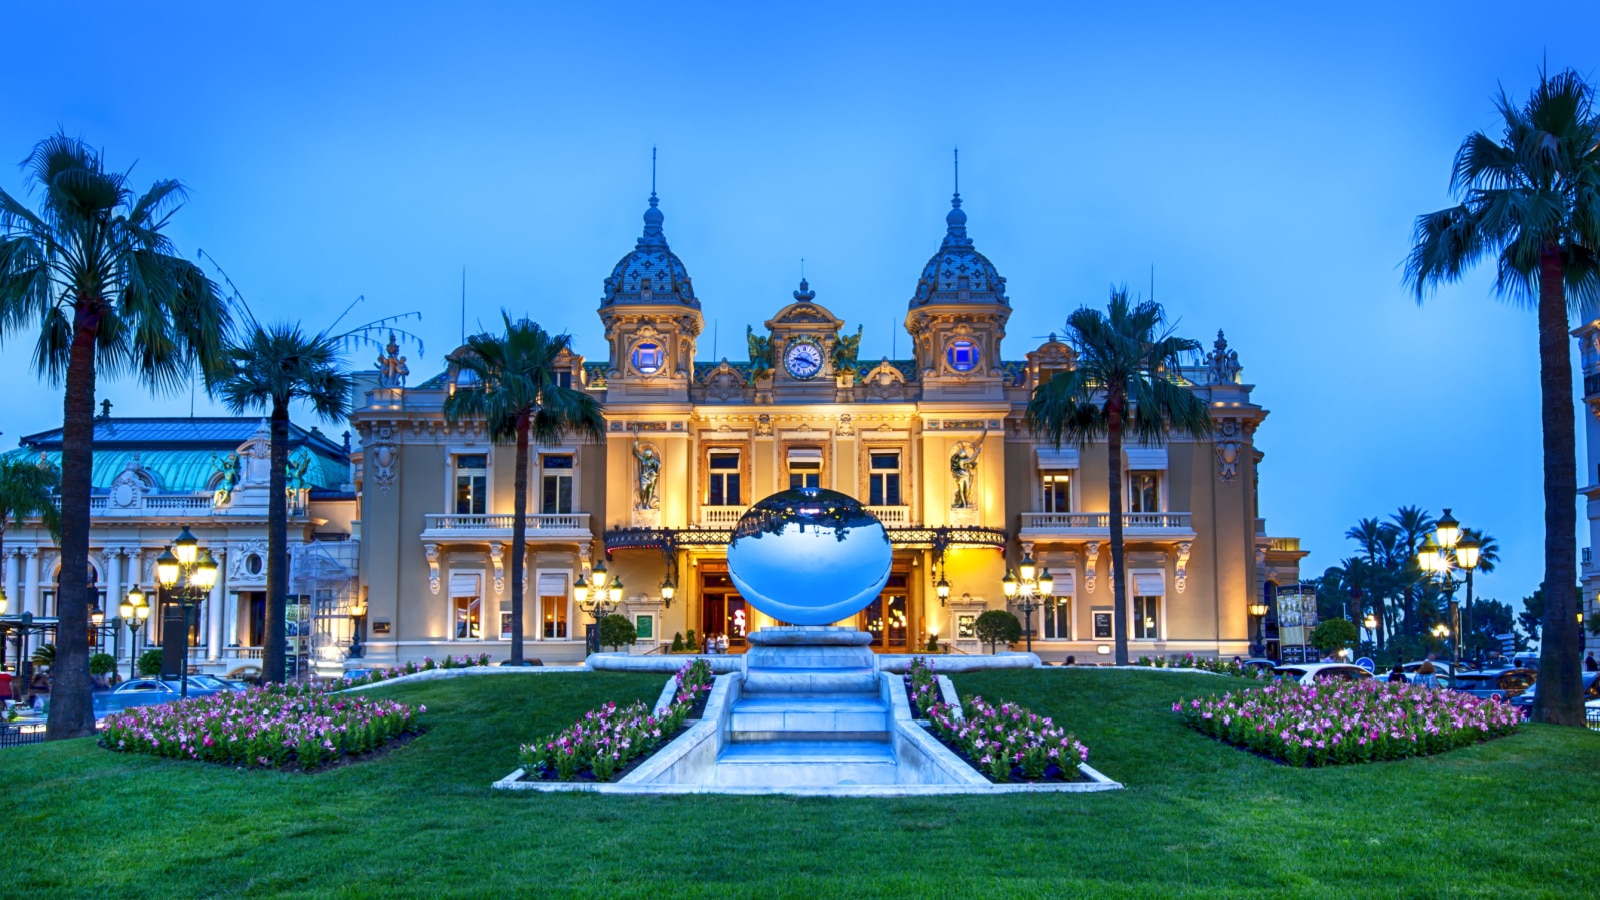 Grand Casino in Monte Carlo, Monaco.